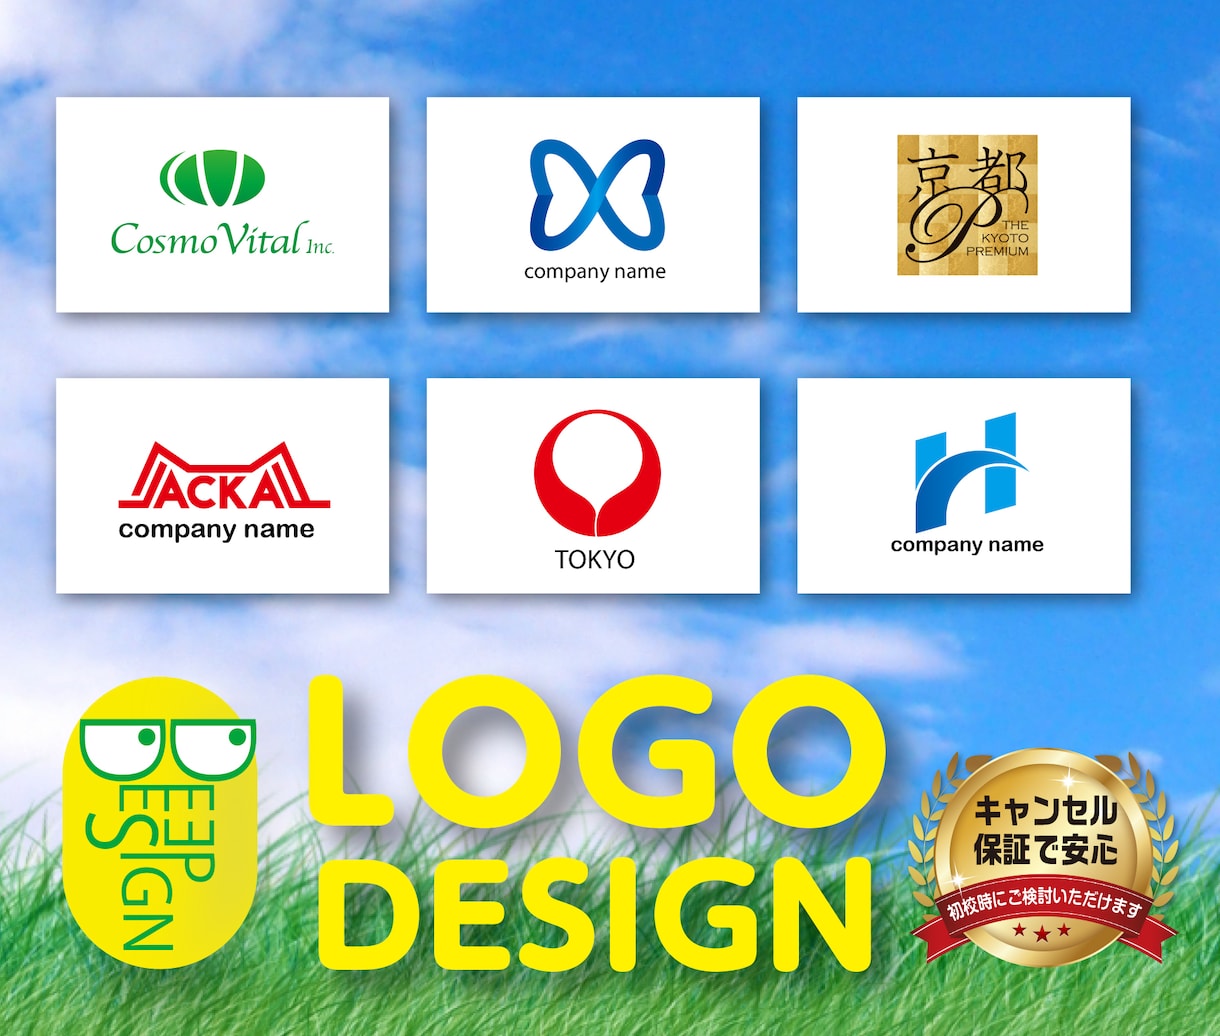 大手企業実績ありプロがロゴデザインをご提案します 目的、意味、想い、デザインにこだわり2案ご提案いたします。 イメージ1